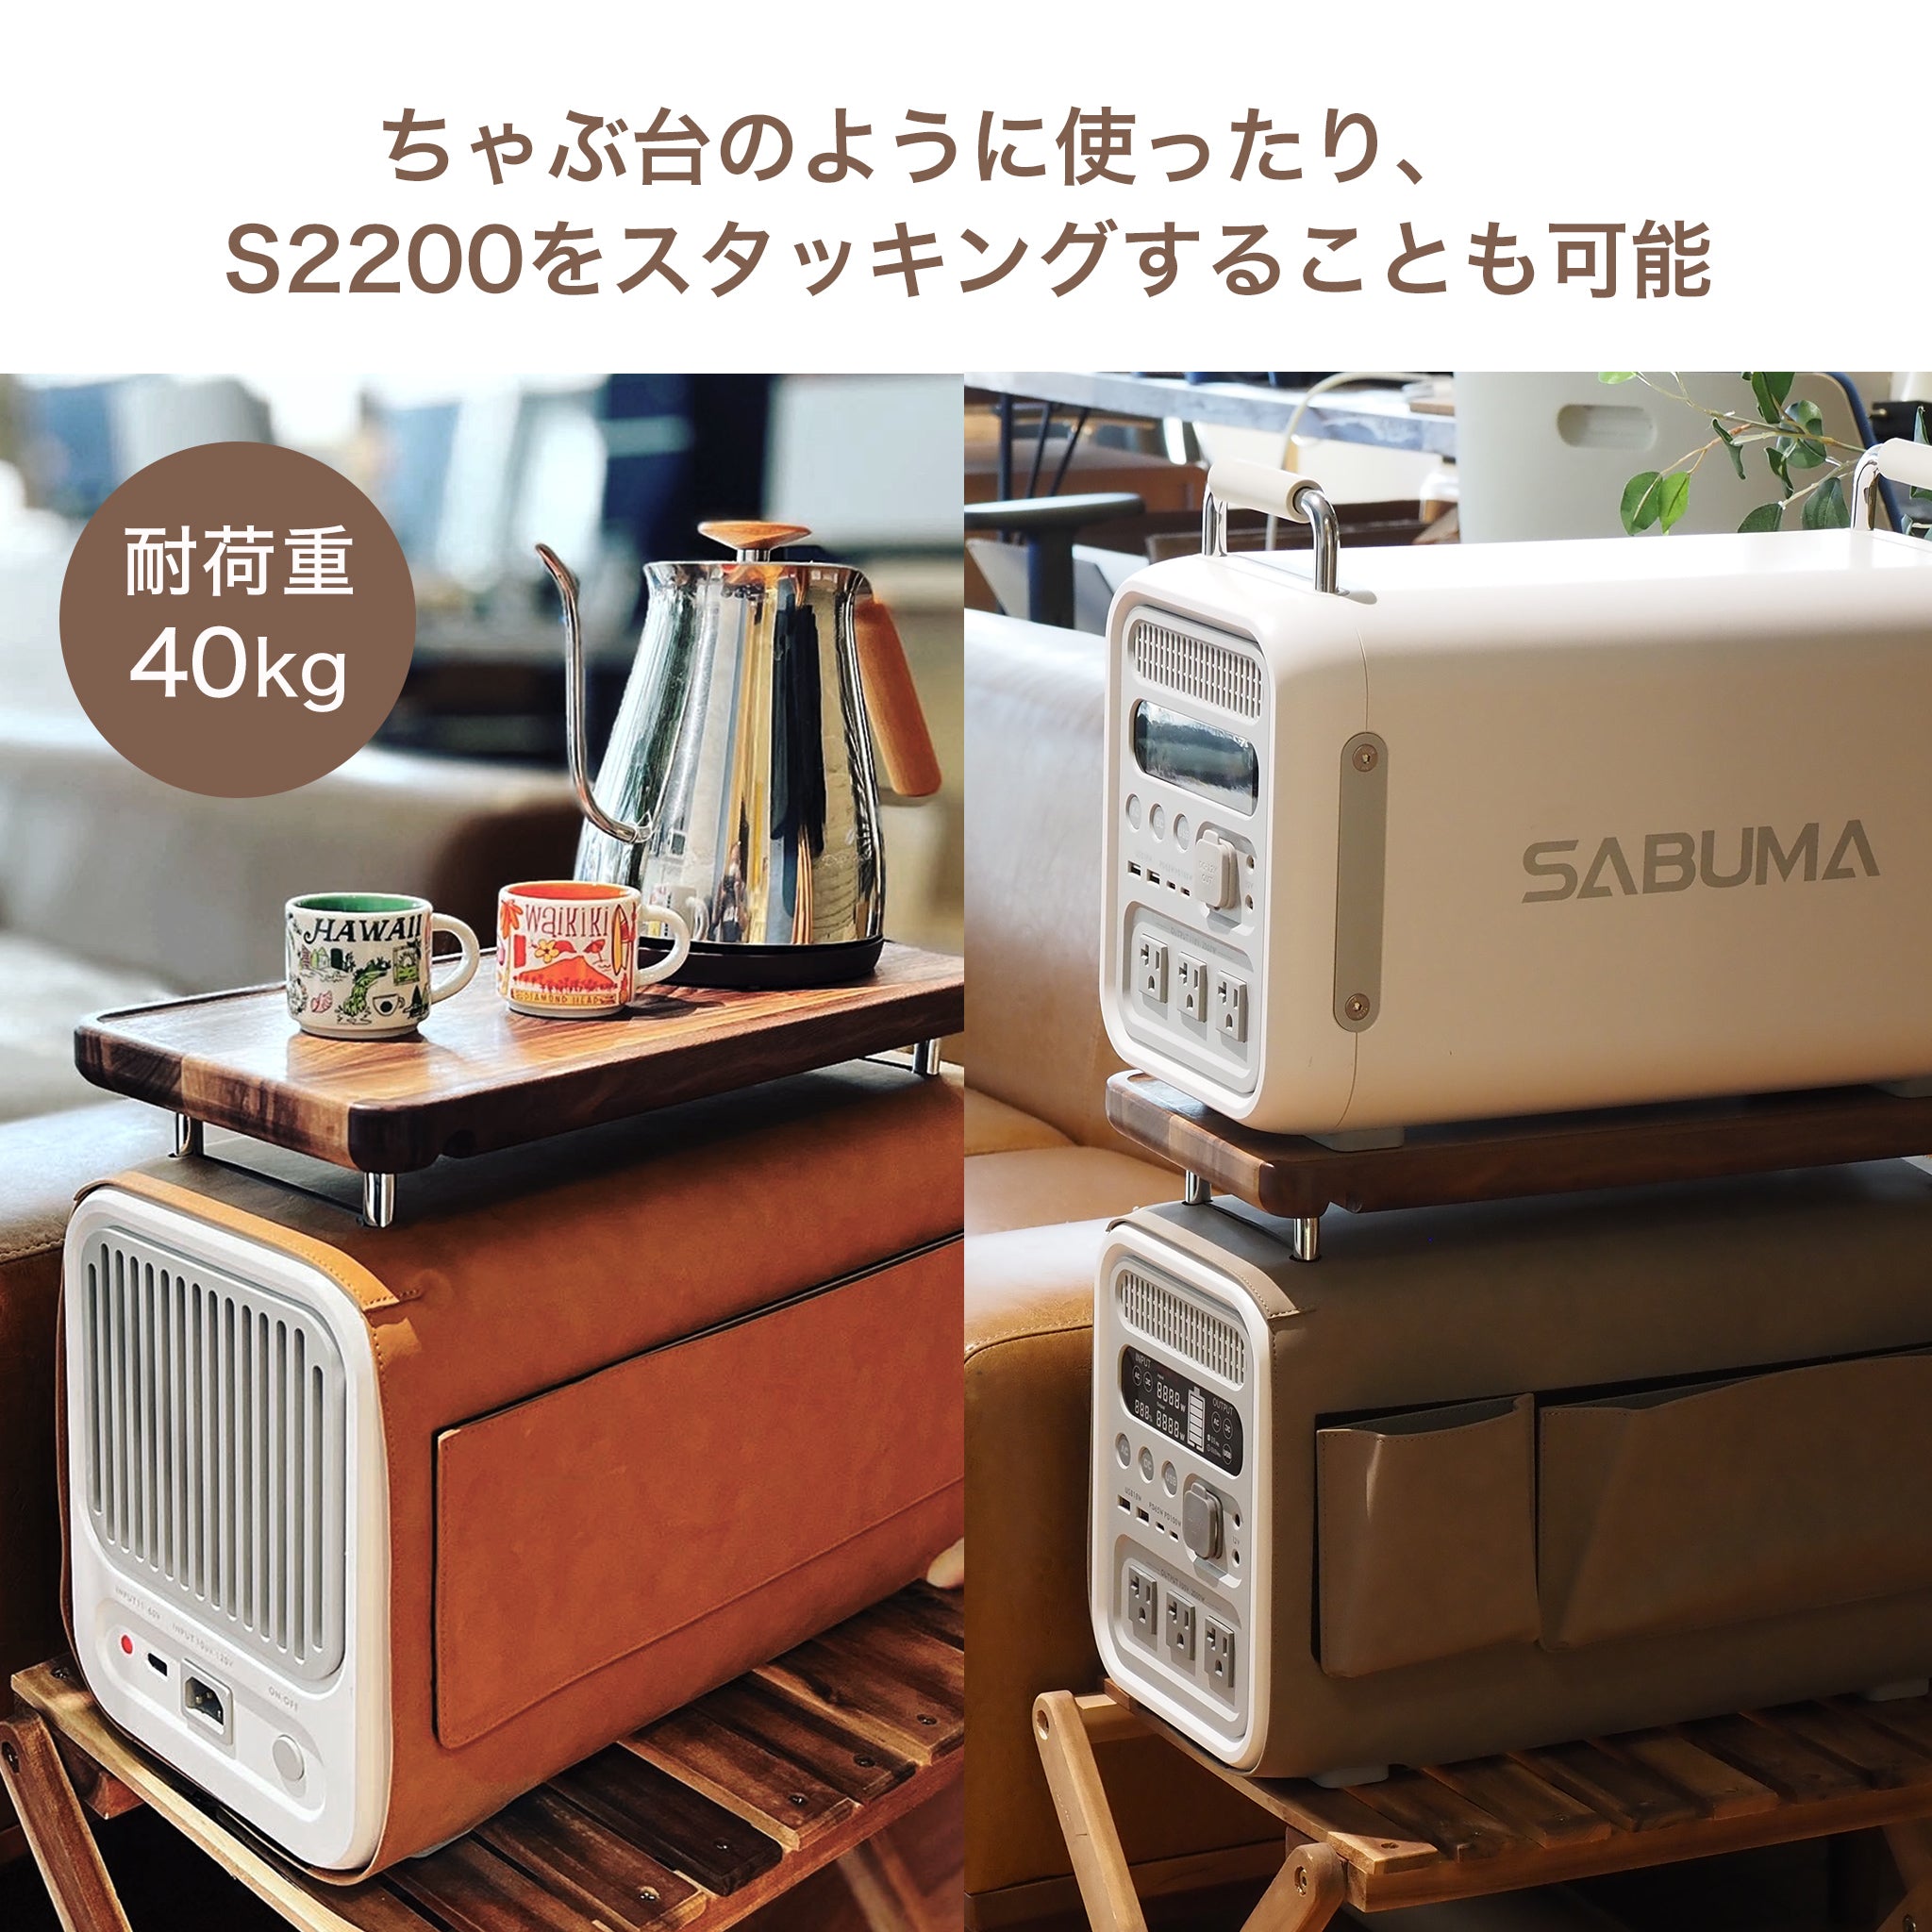 スタッキングテーブルCHABUMA for S2200 – SABUMA公式ストア